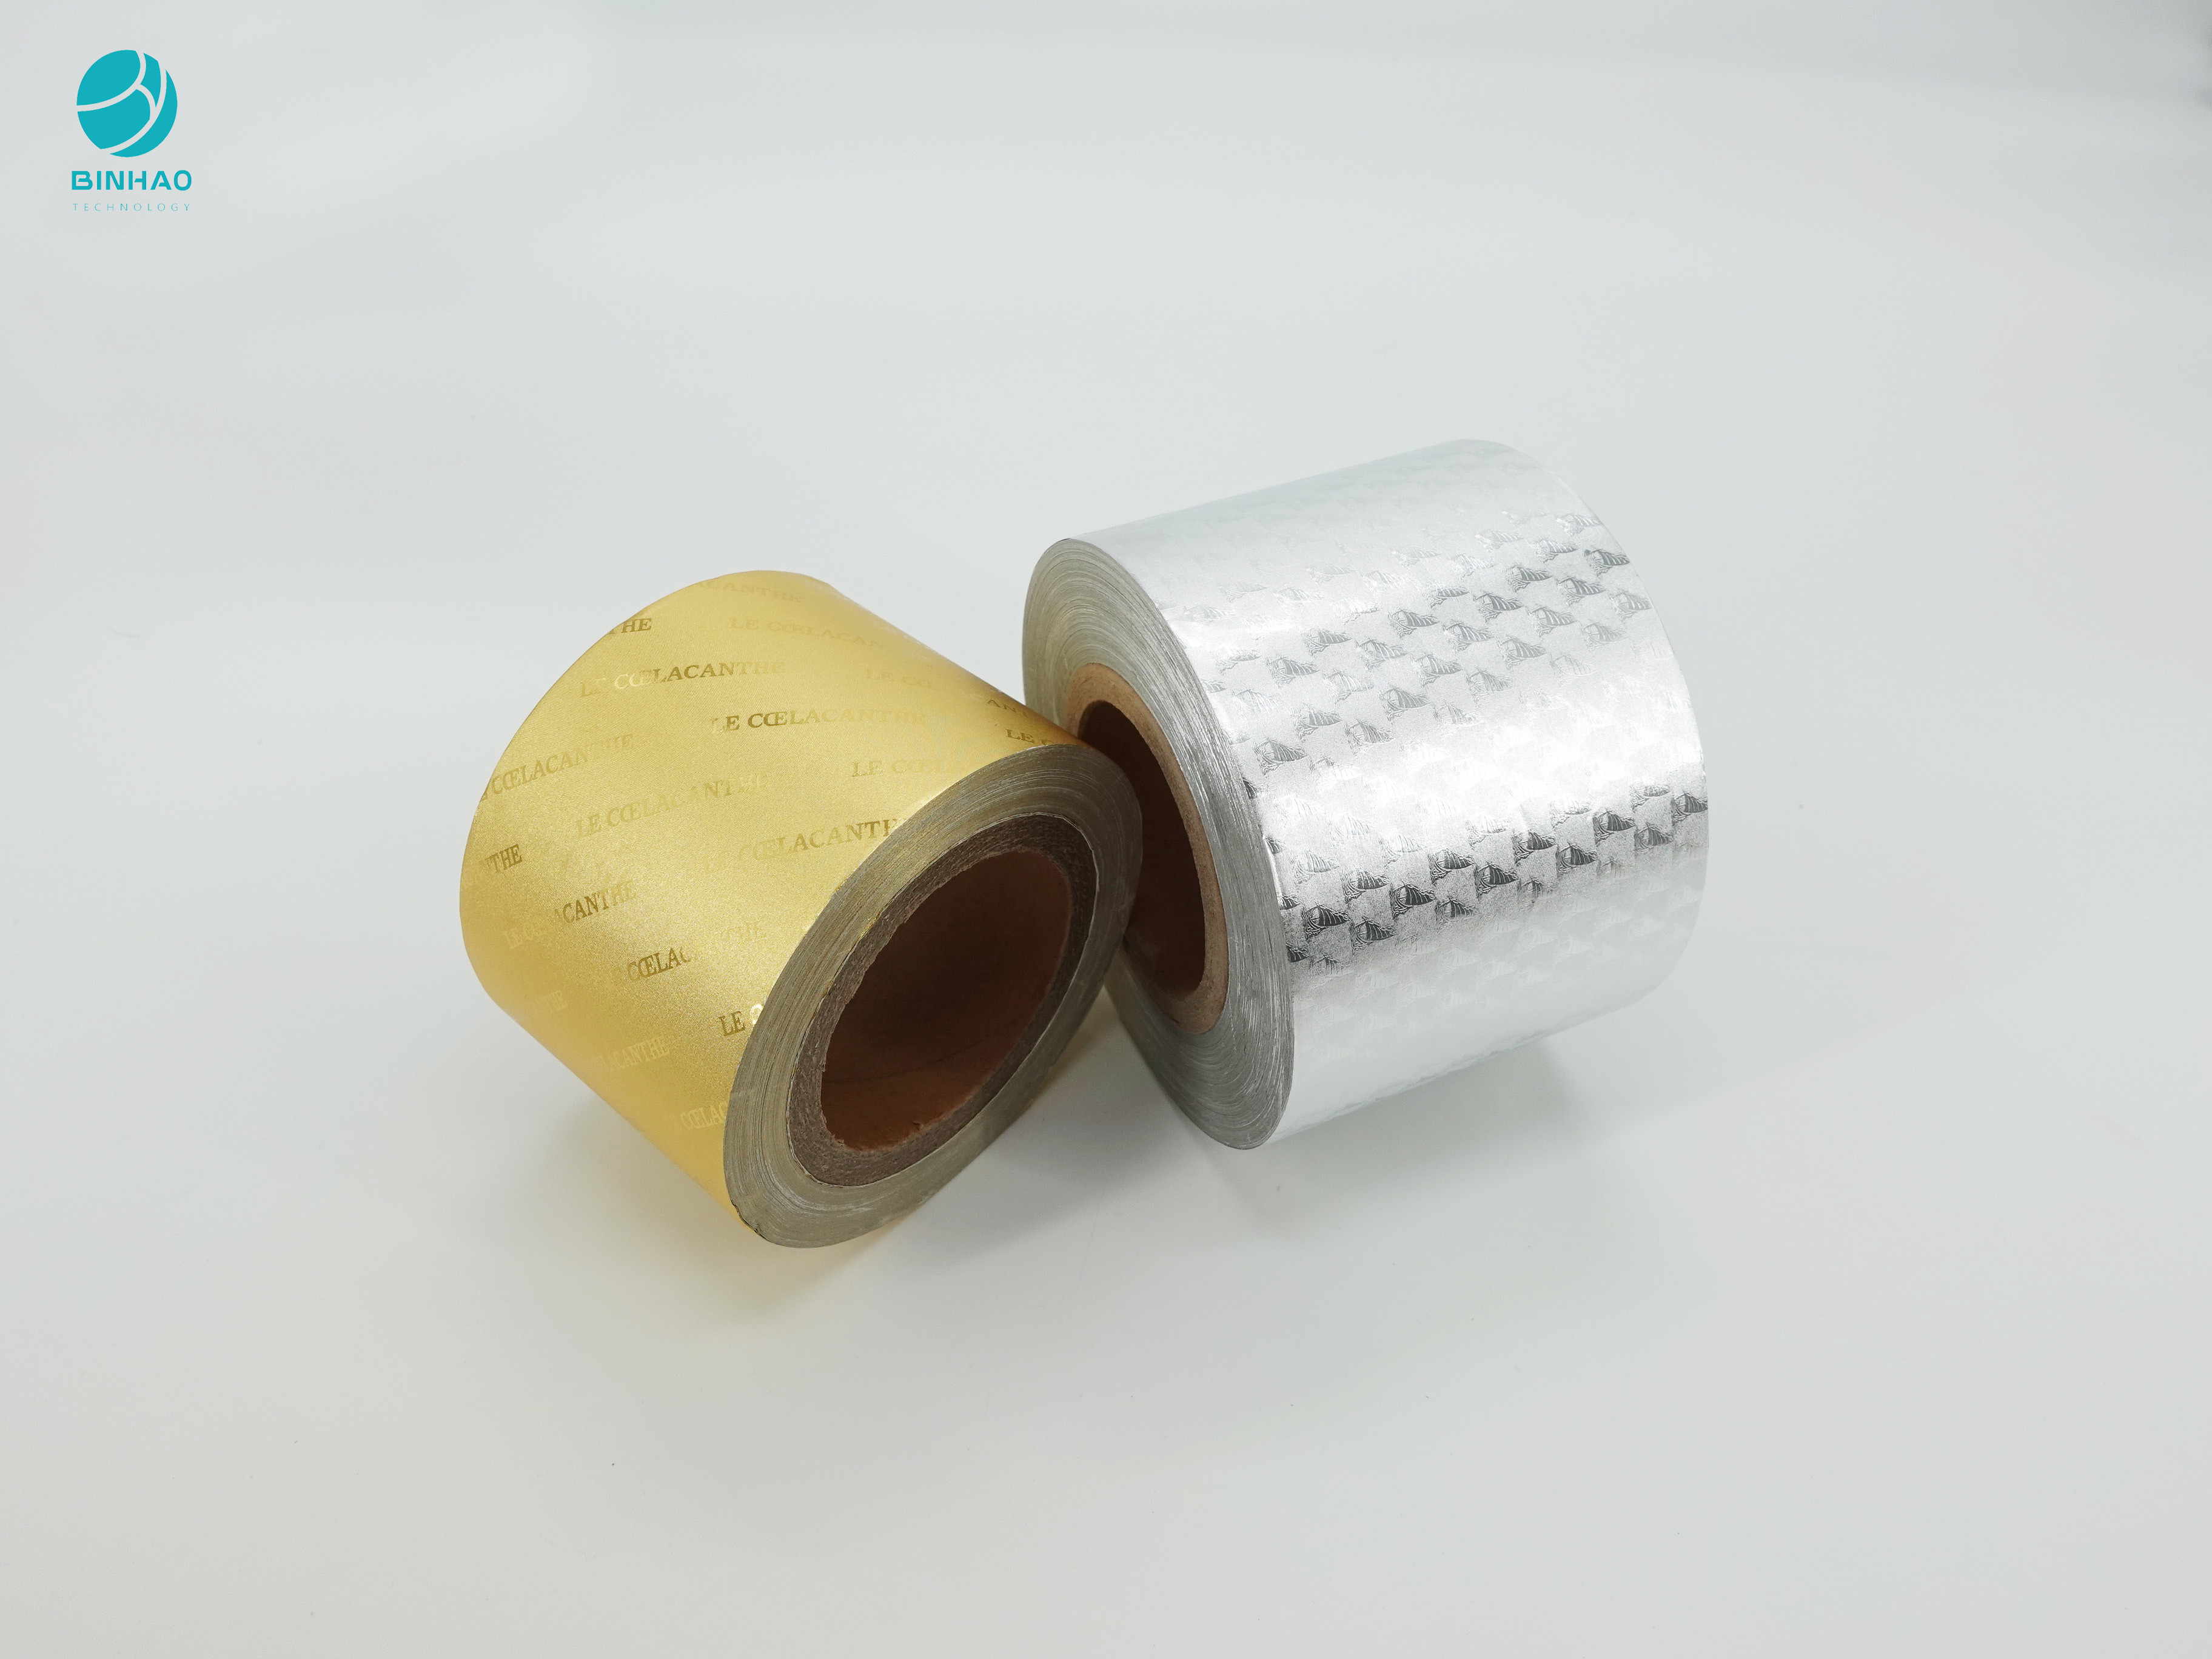 담배 속포장을 위한 Eco 우호적 엠보싱된 로고 알루미늄 포일지